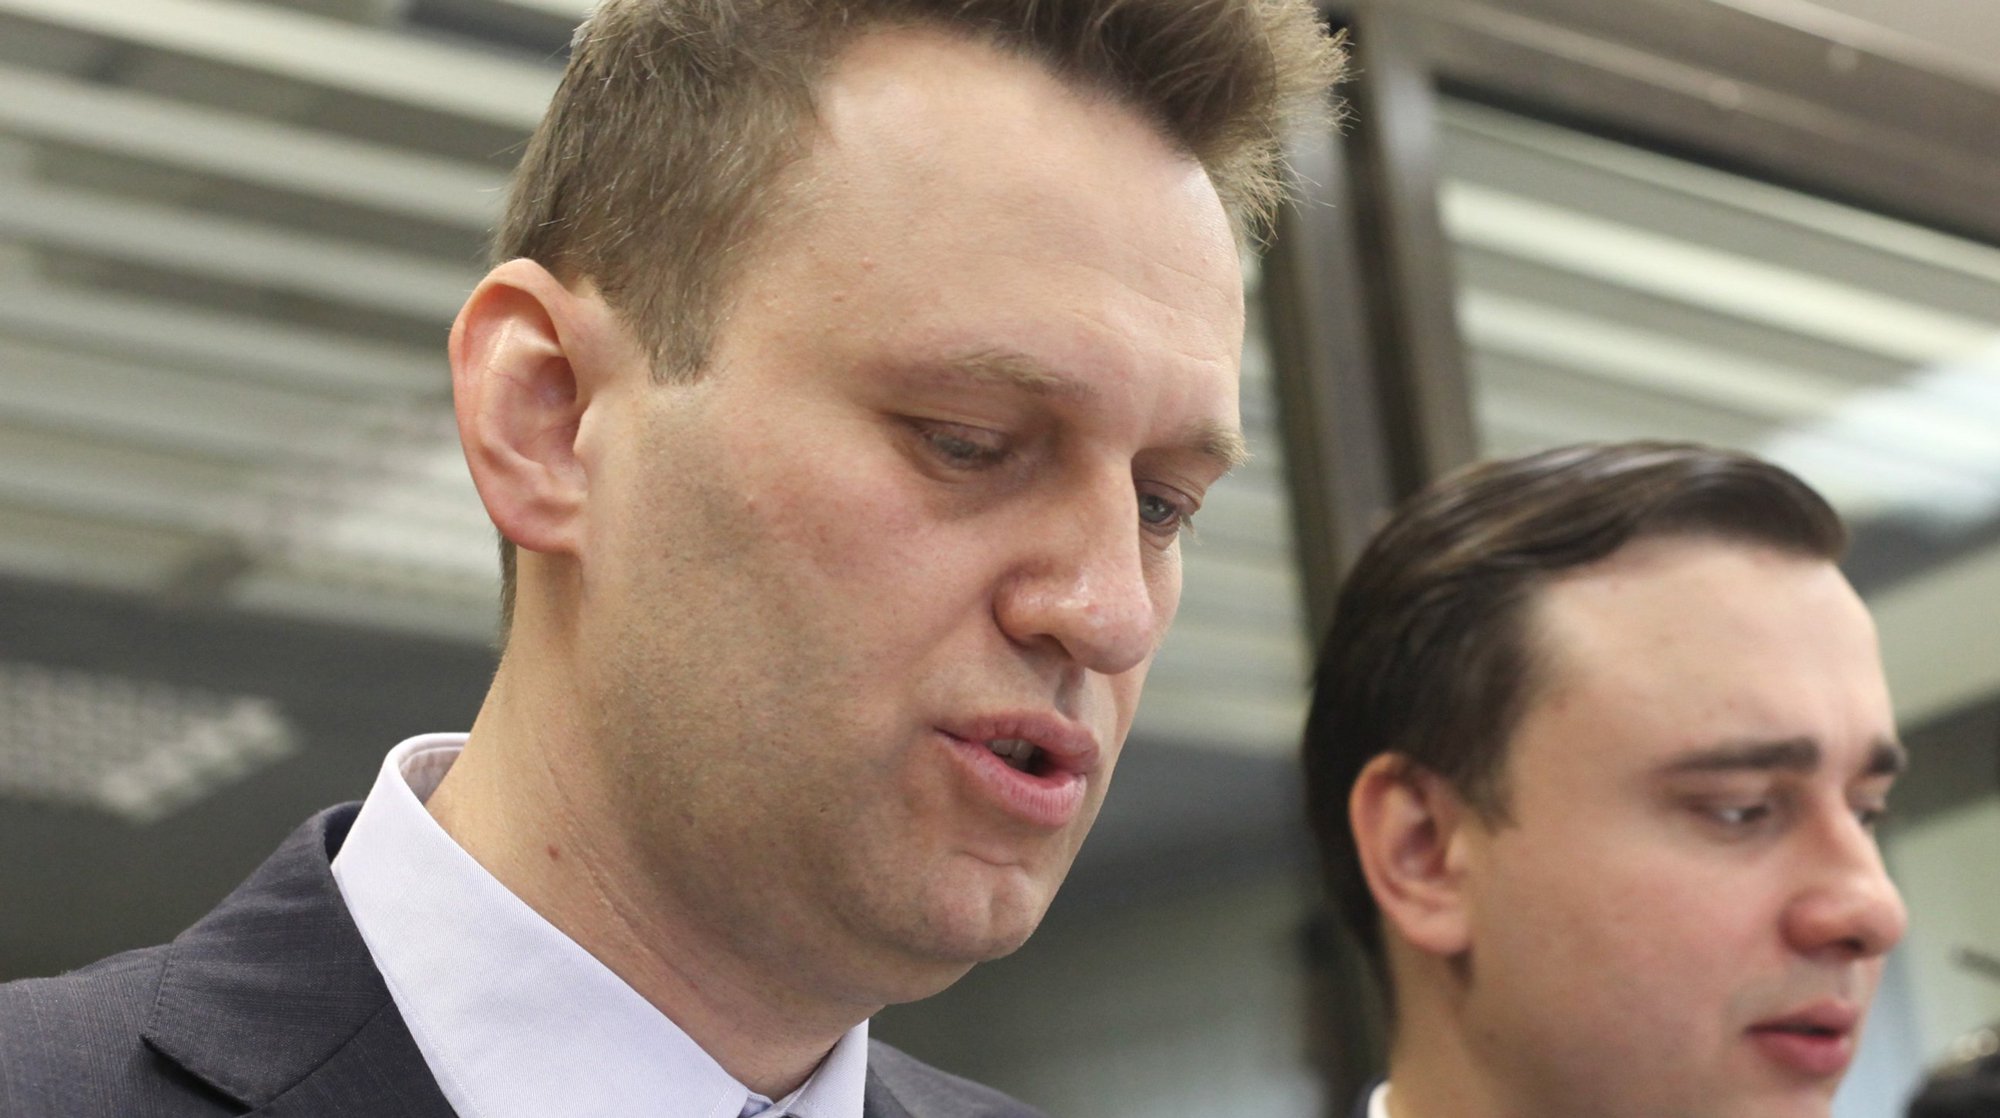 Dailystorm - Би-би-си: В Кремле отказались от идеи допускать Навального на выборы-2018